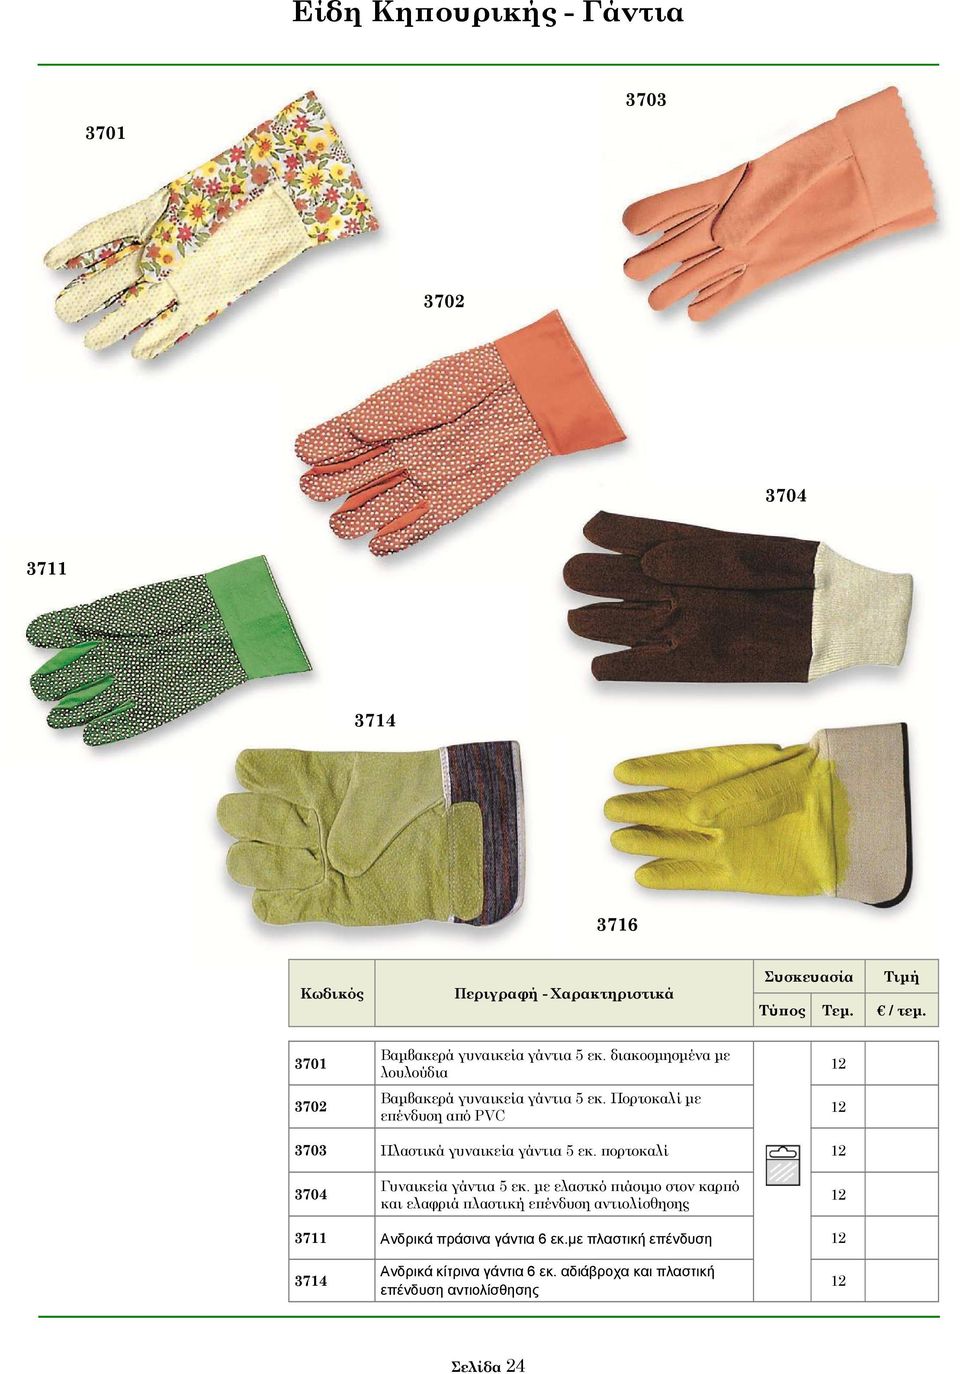 Πορτοκαλί µε ε ένδυση α ό PVC 2 3703 Πλαστικά γυναικεία γάντια 5 εκ. ορτοκαλί 2 3704 Γυναικεία γάντια 5 εκ.